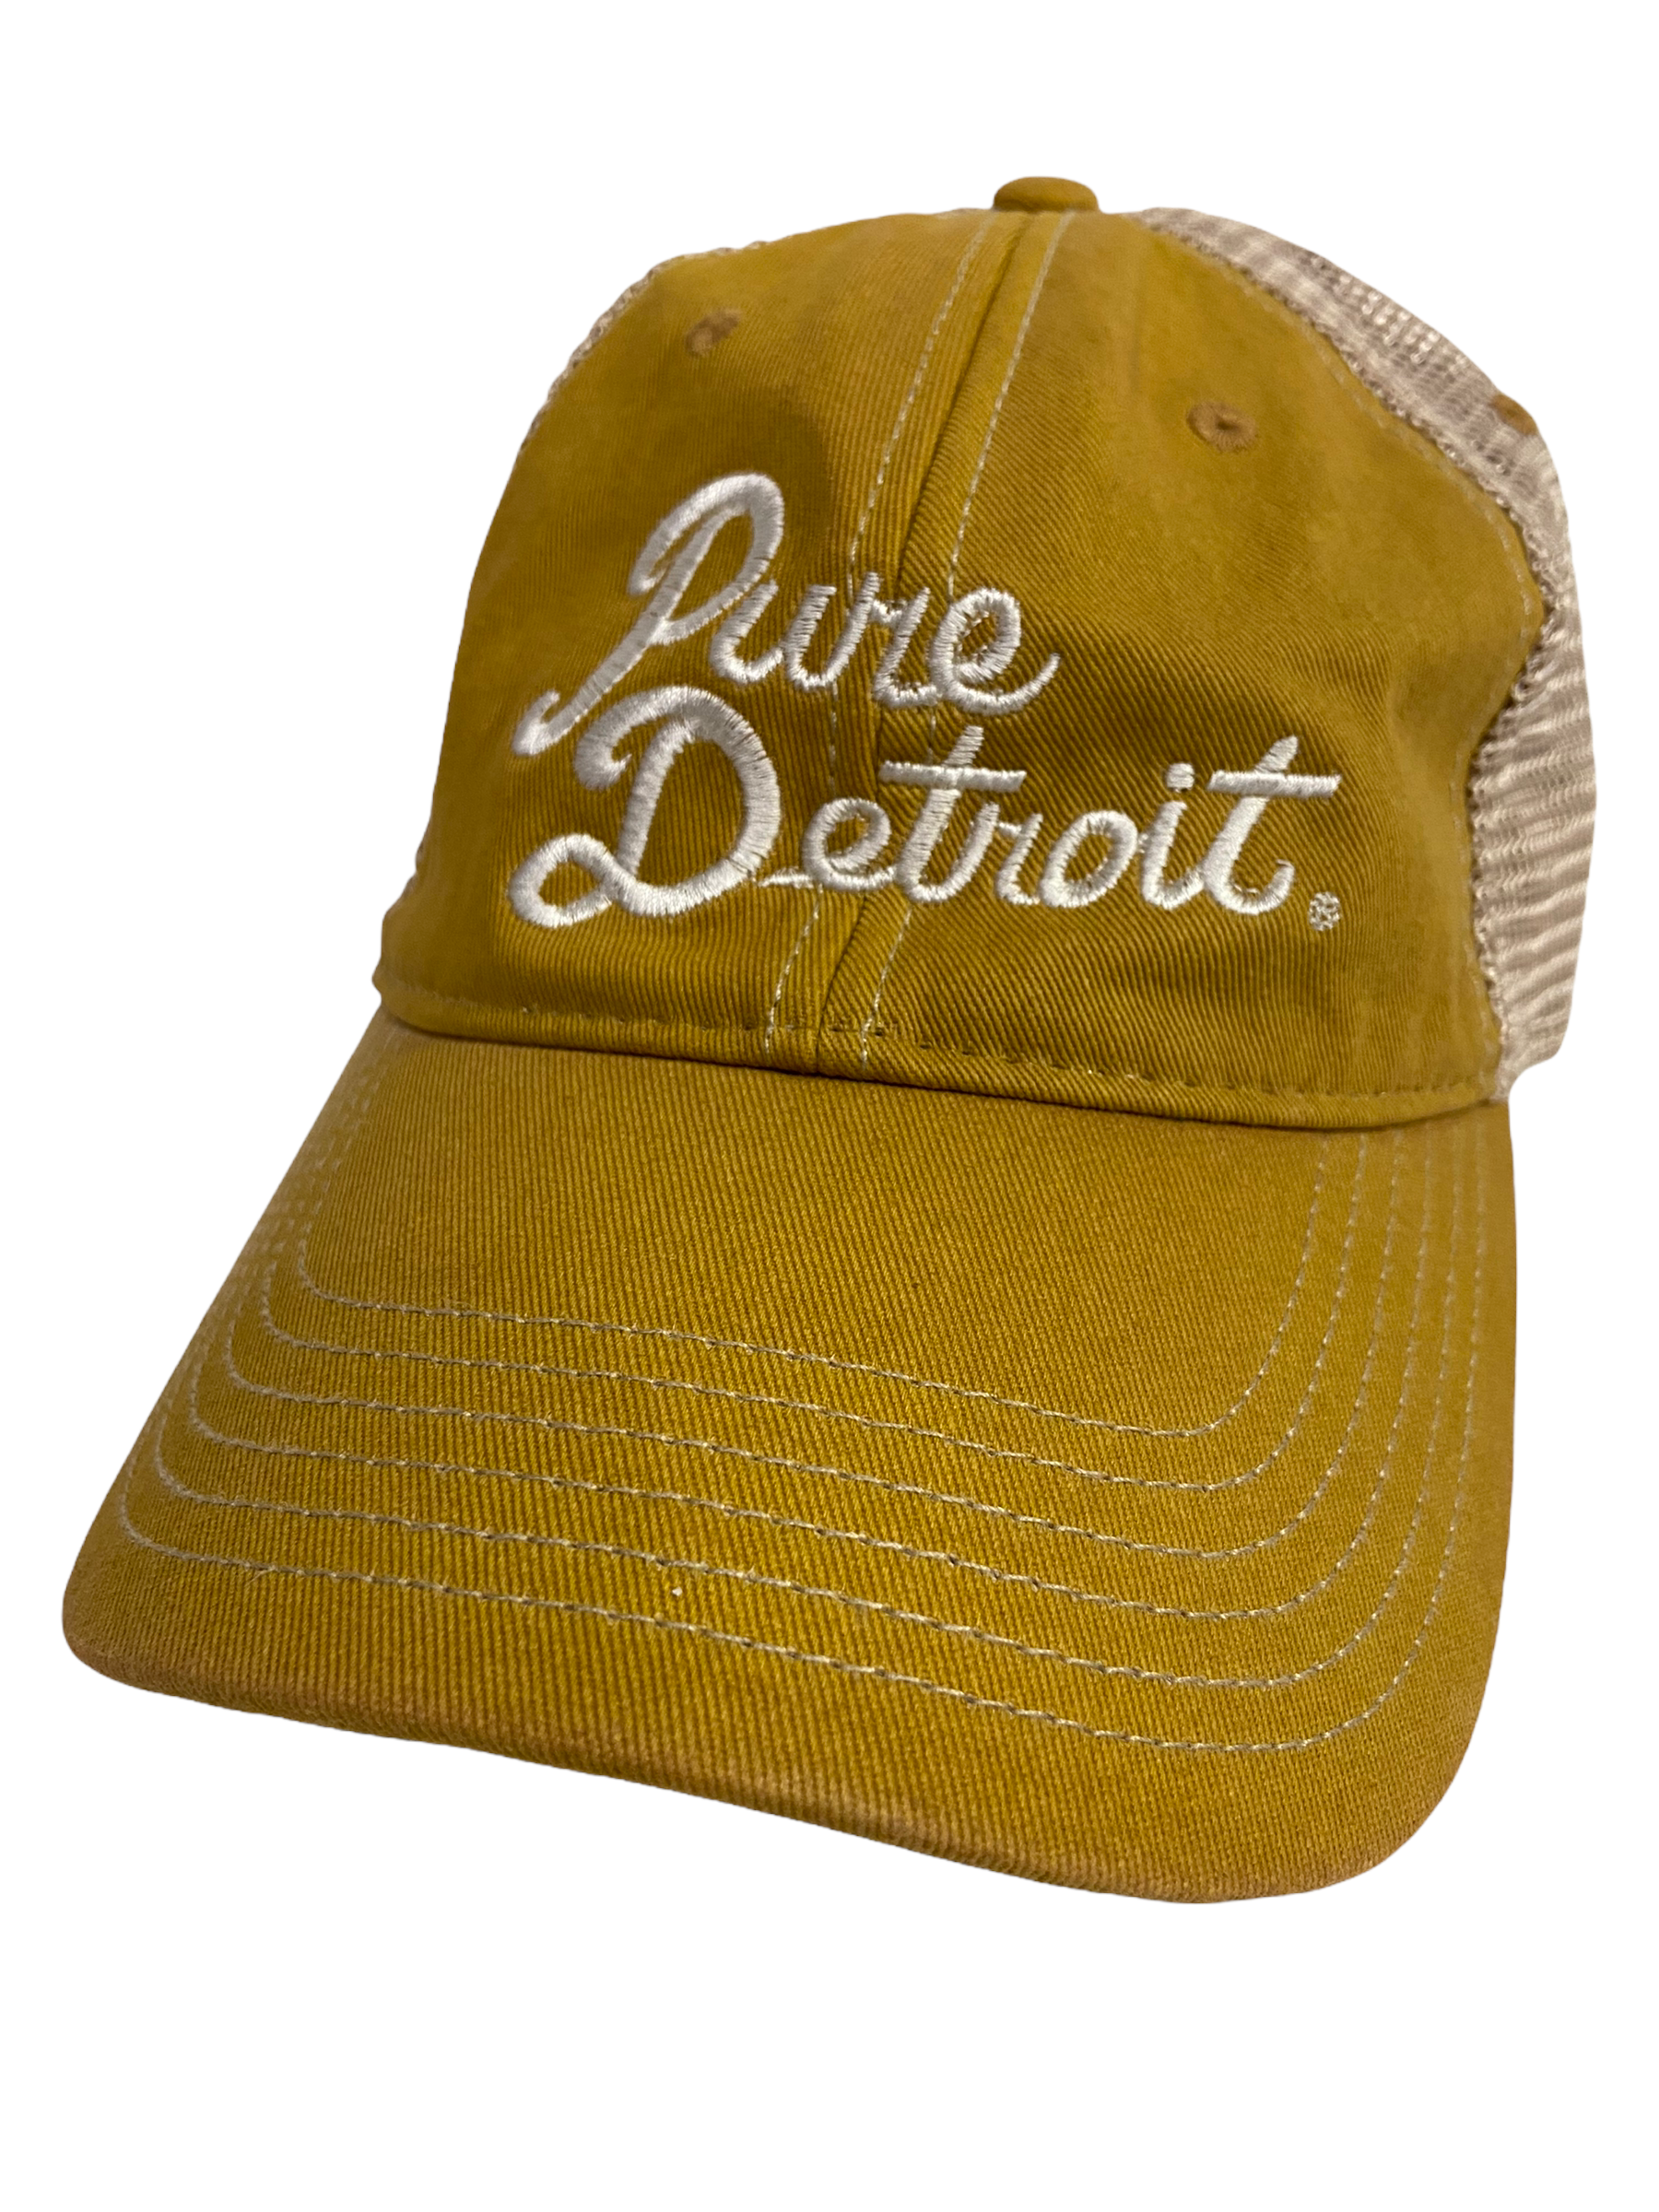 Pure Detroit Script Trucker Adjustable Hat / Unisex Hat White/Mustard  